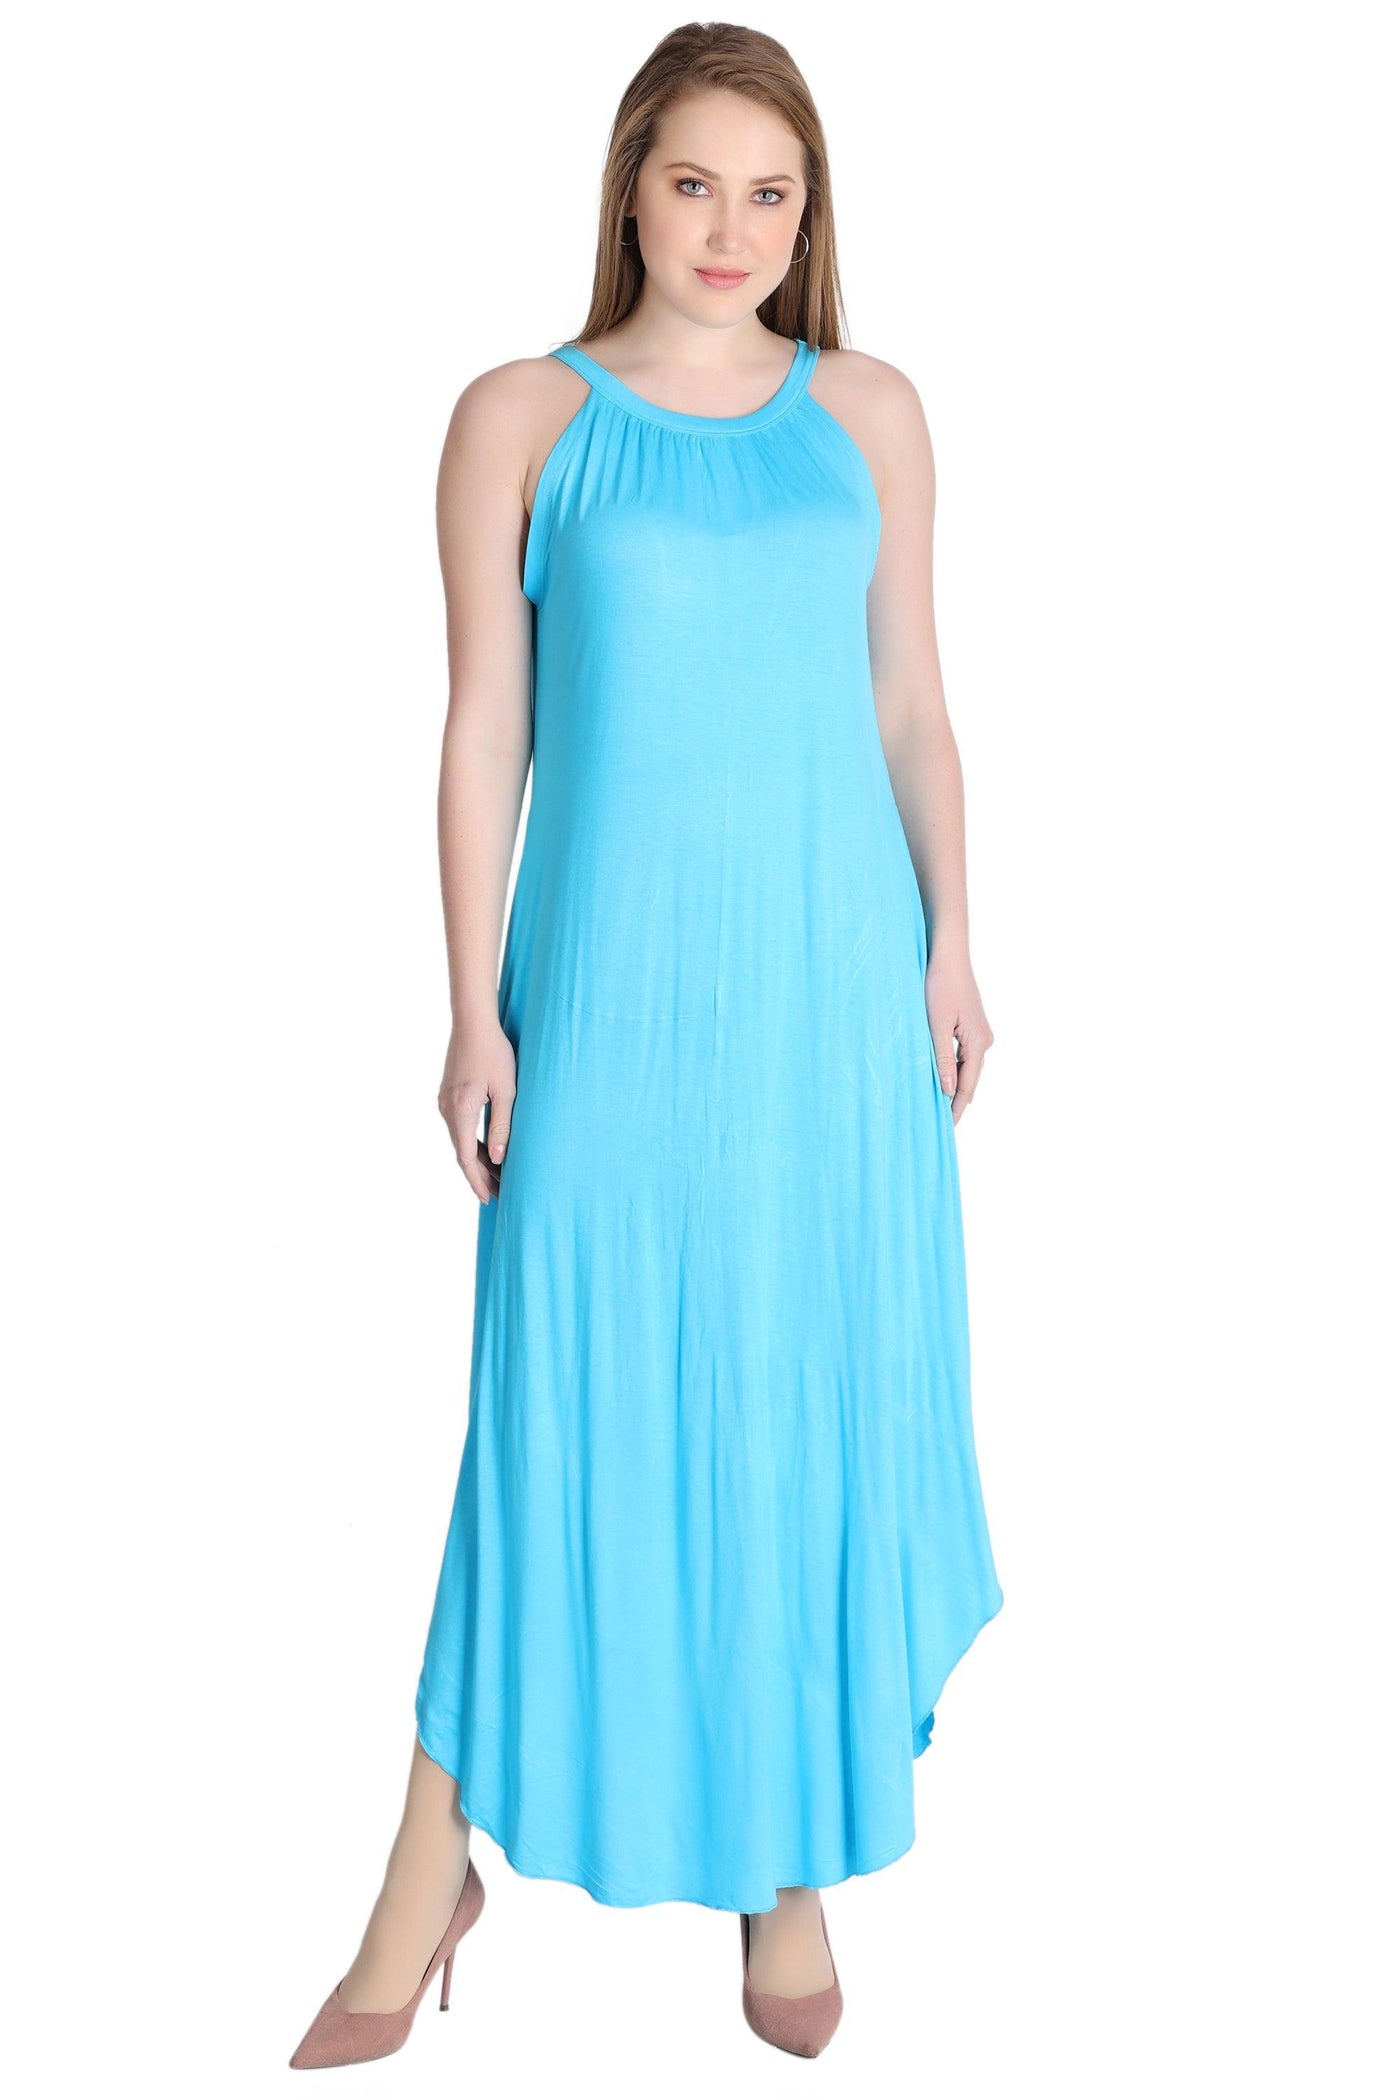 Solid Color Dress 30329  - Advance Apparels Inc